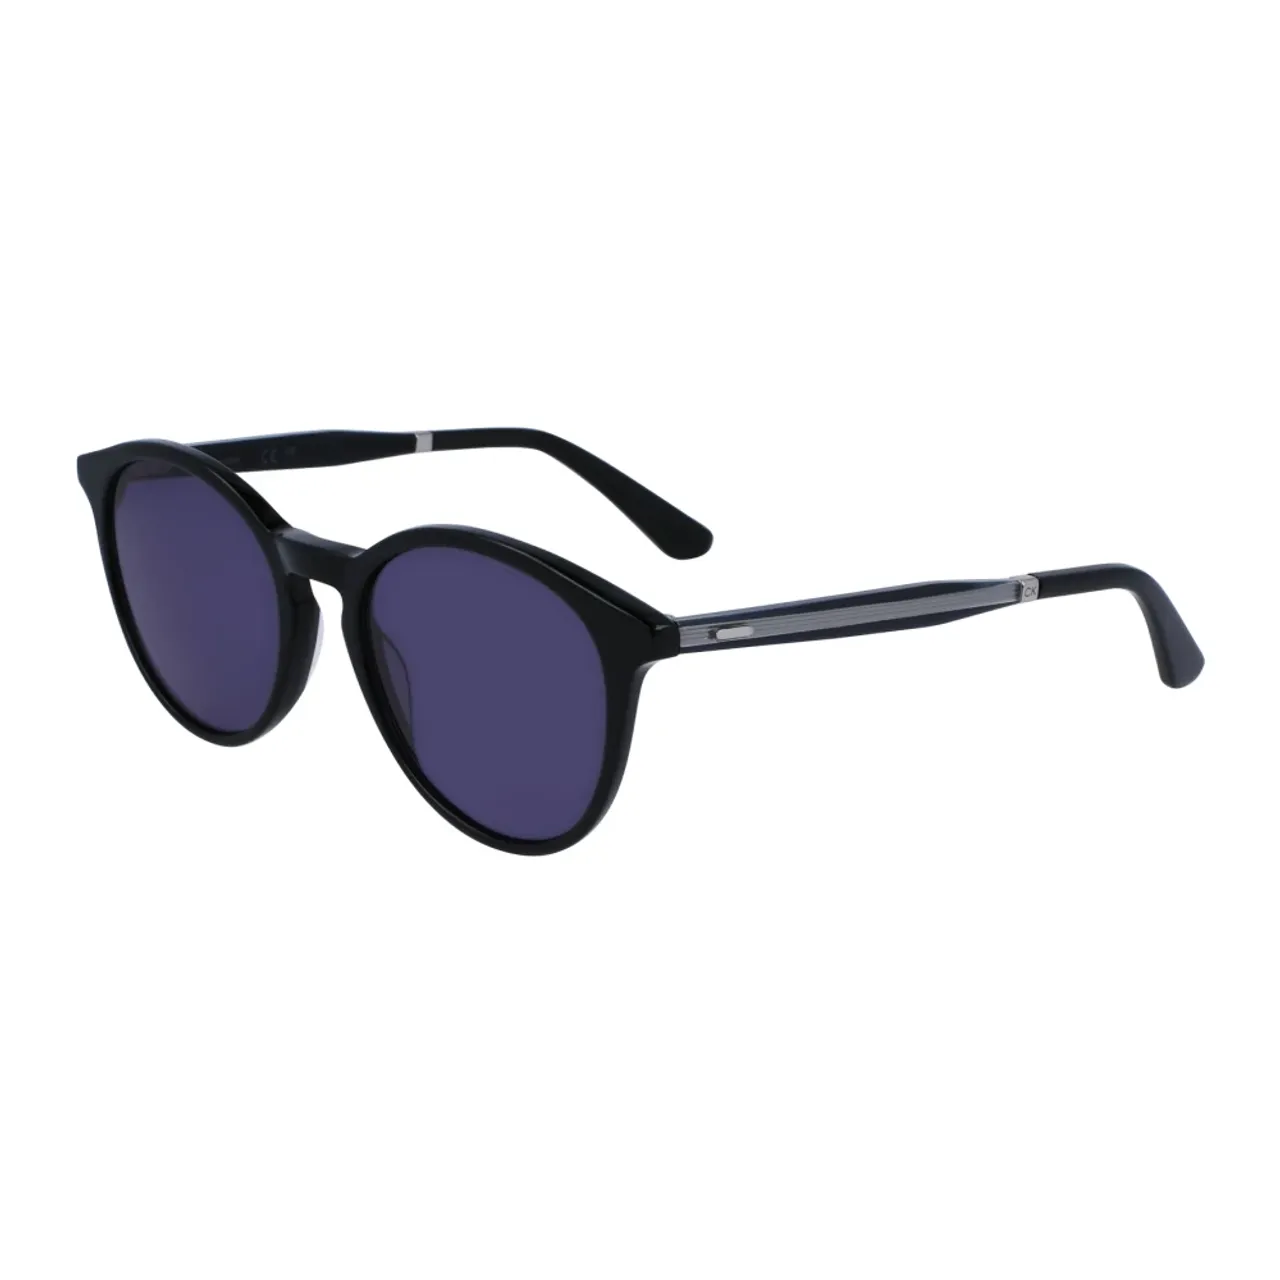 Schwarze/Graue Blaue Sonnenbrille,Sonnenbrille Havana/Braun Getönt,Blaue Havana Sonnenbrille Calvin Klein